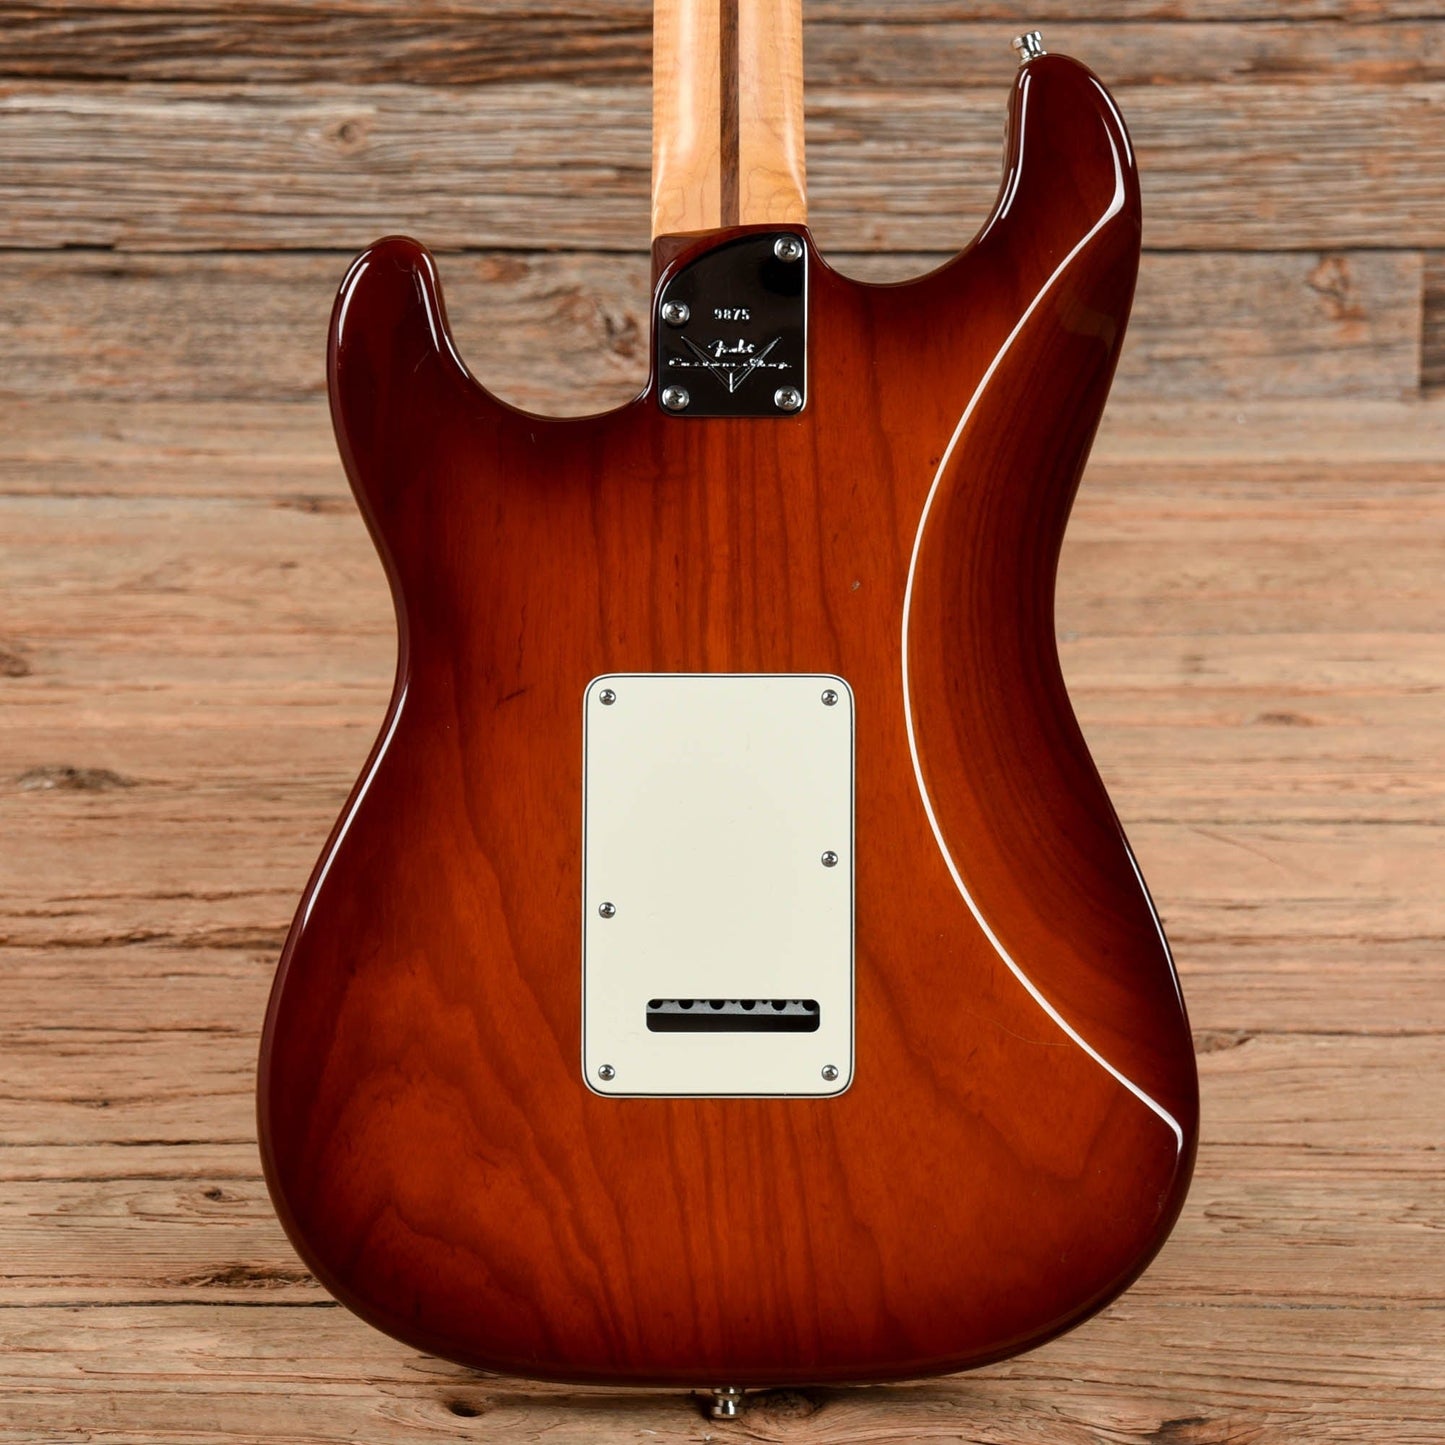 Fender Custom Shop Custom Deluxe Stratocaster Sunburst 2011 Electric Guitars / Solid Body